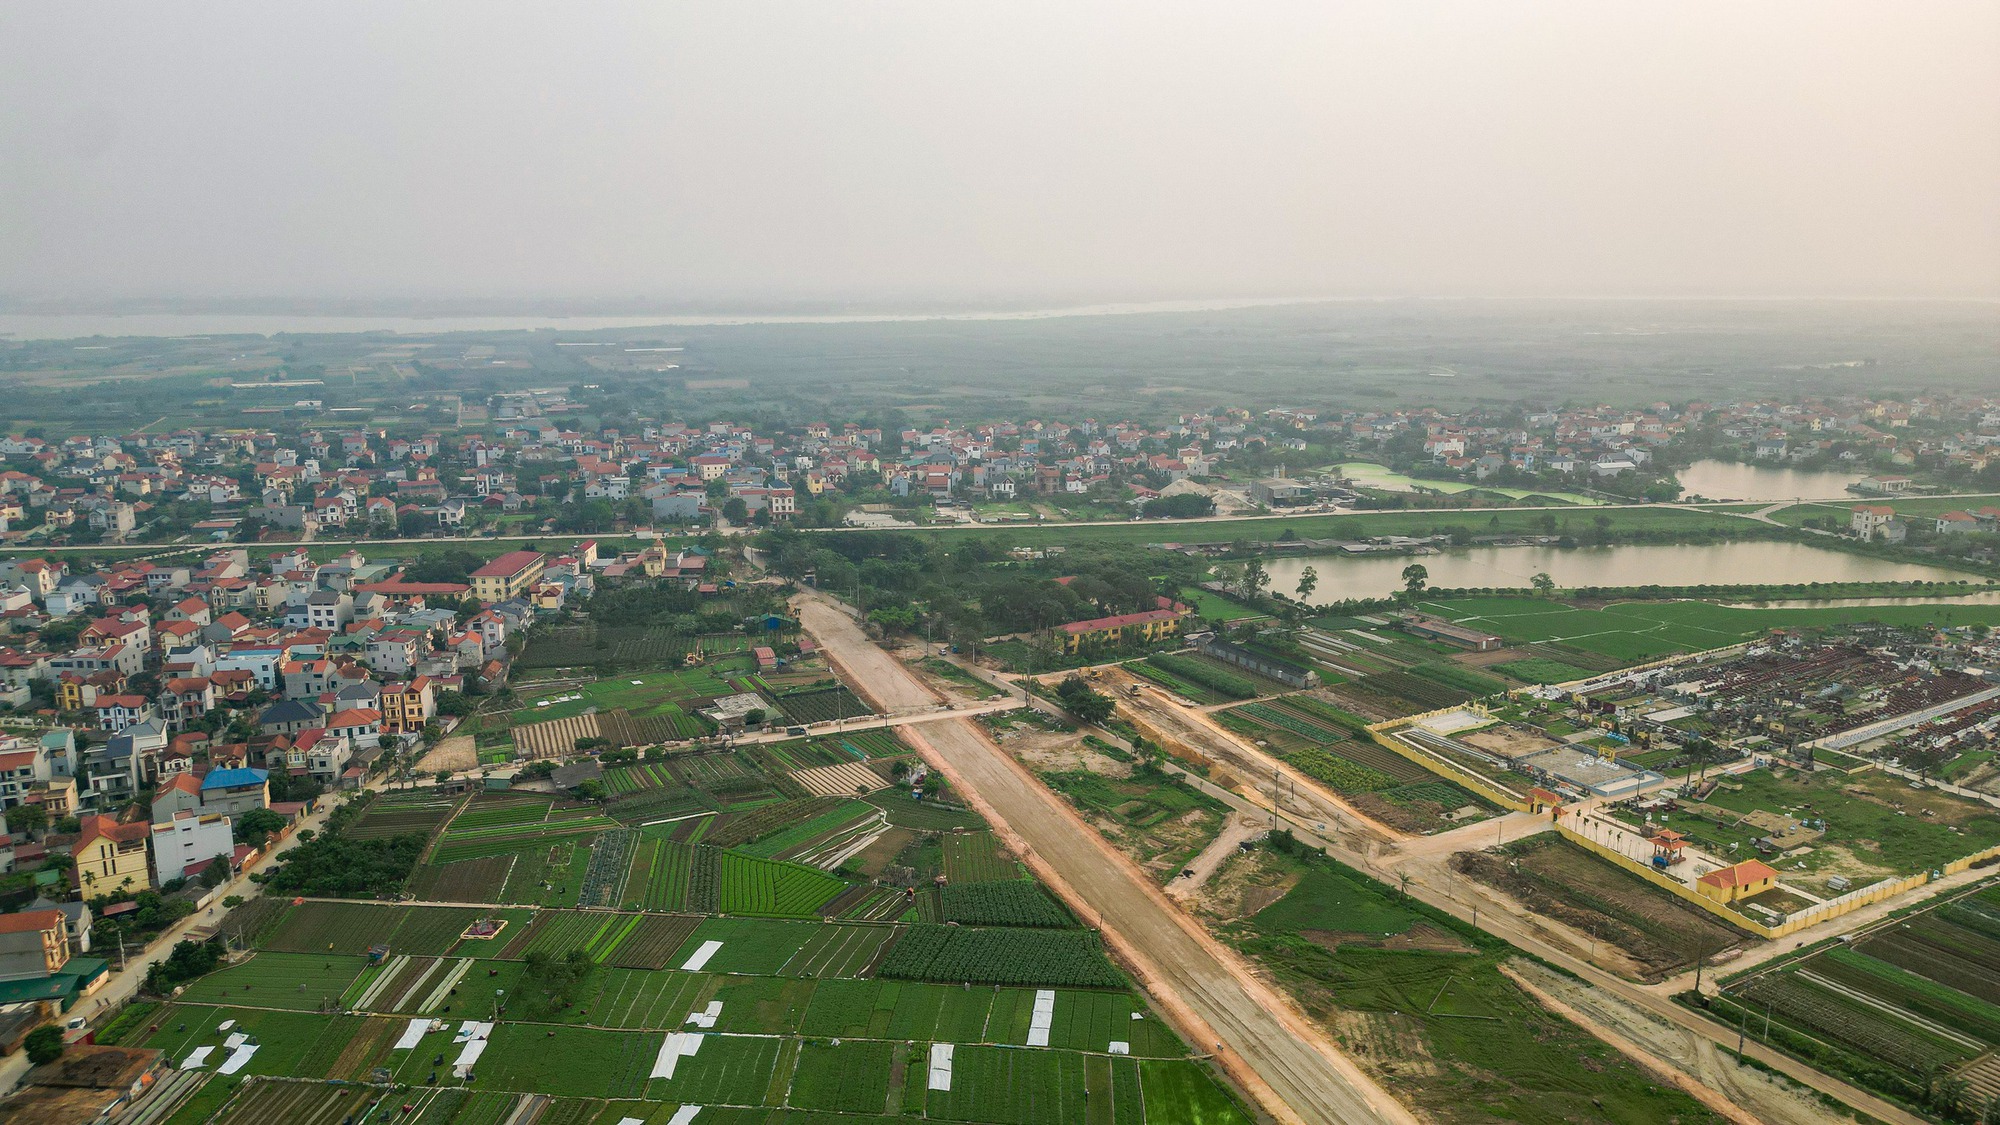 Toàn cảnh vị trí xây dựng cầu Hồng Hà vượt sông Hồng trị giá gần 10.000 tỉ đồng- Ảnh 4.